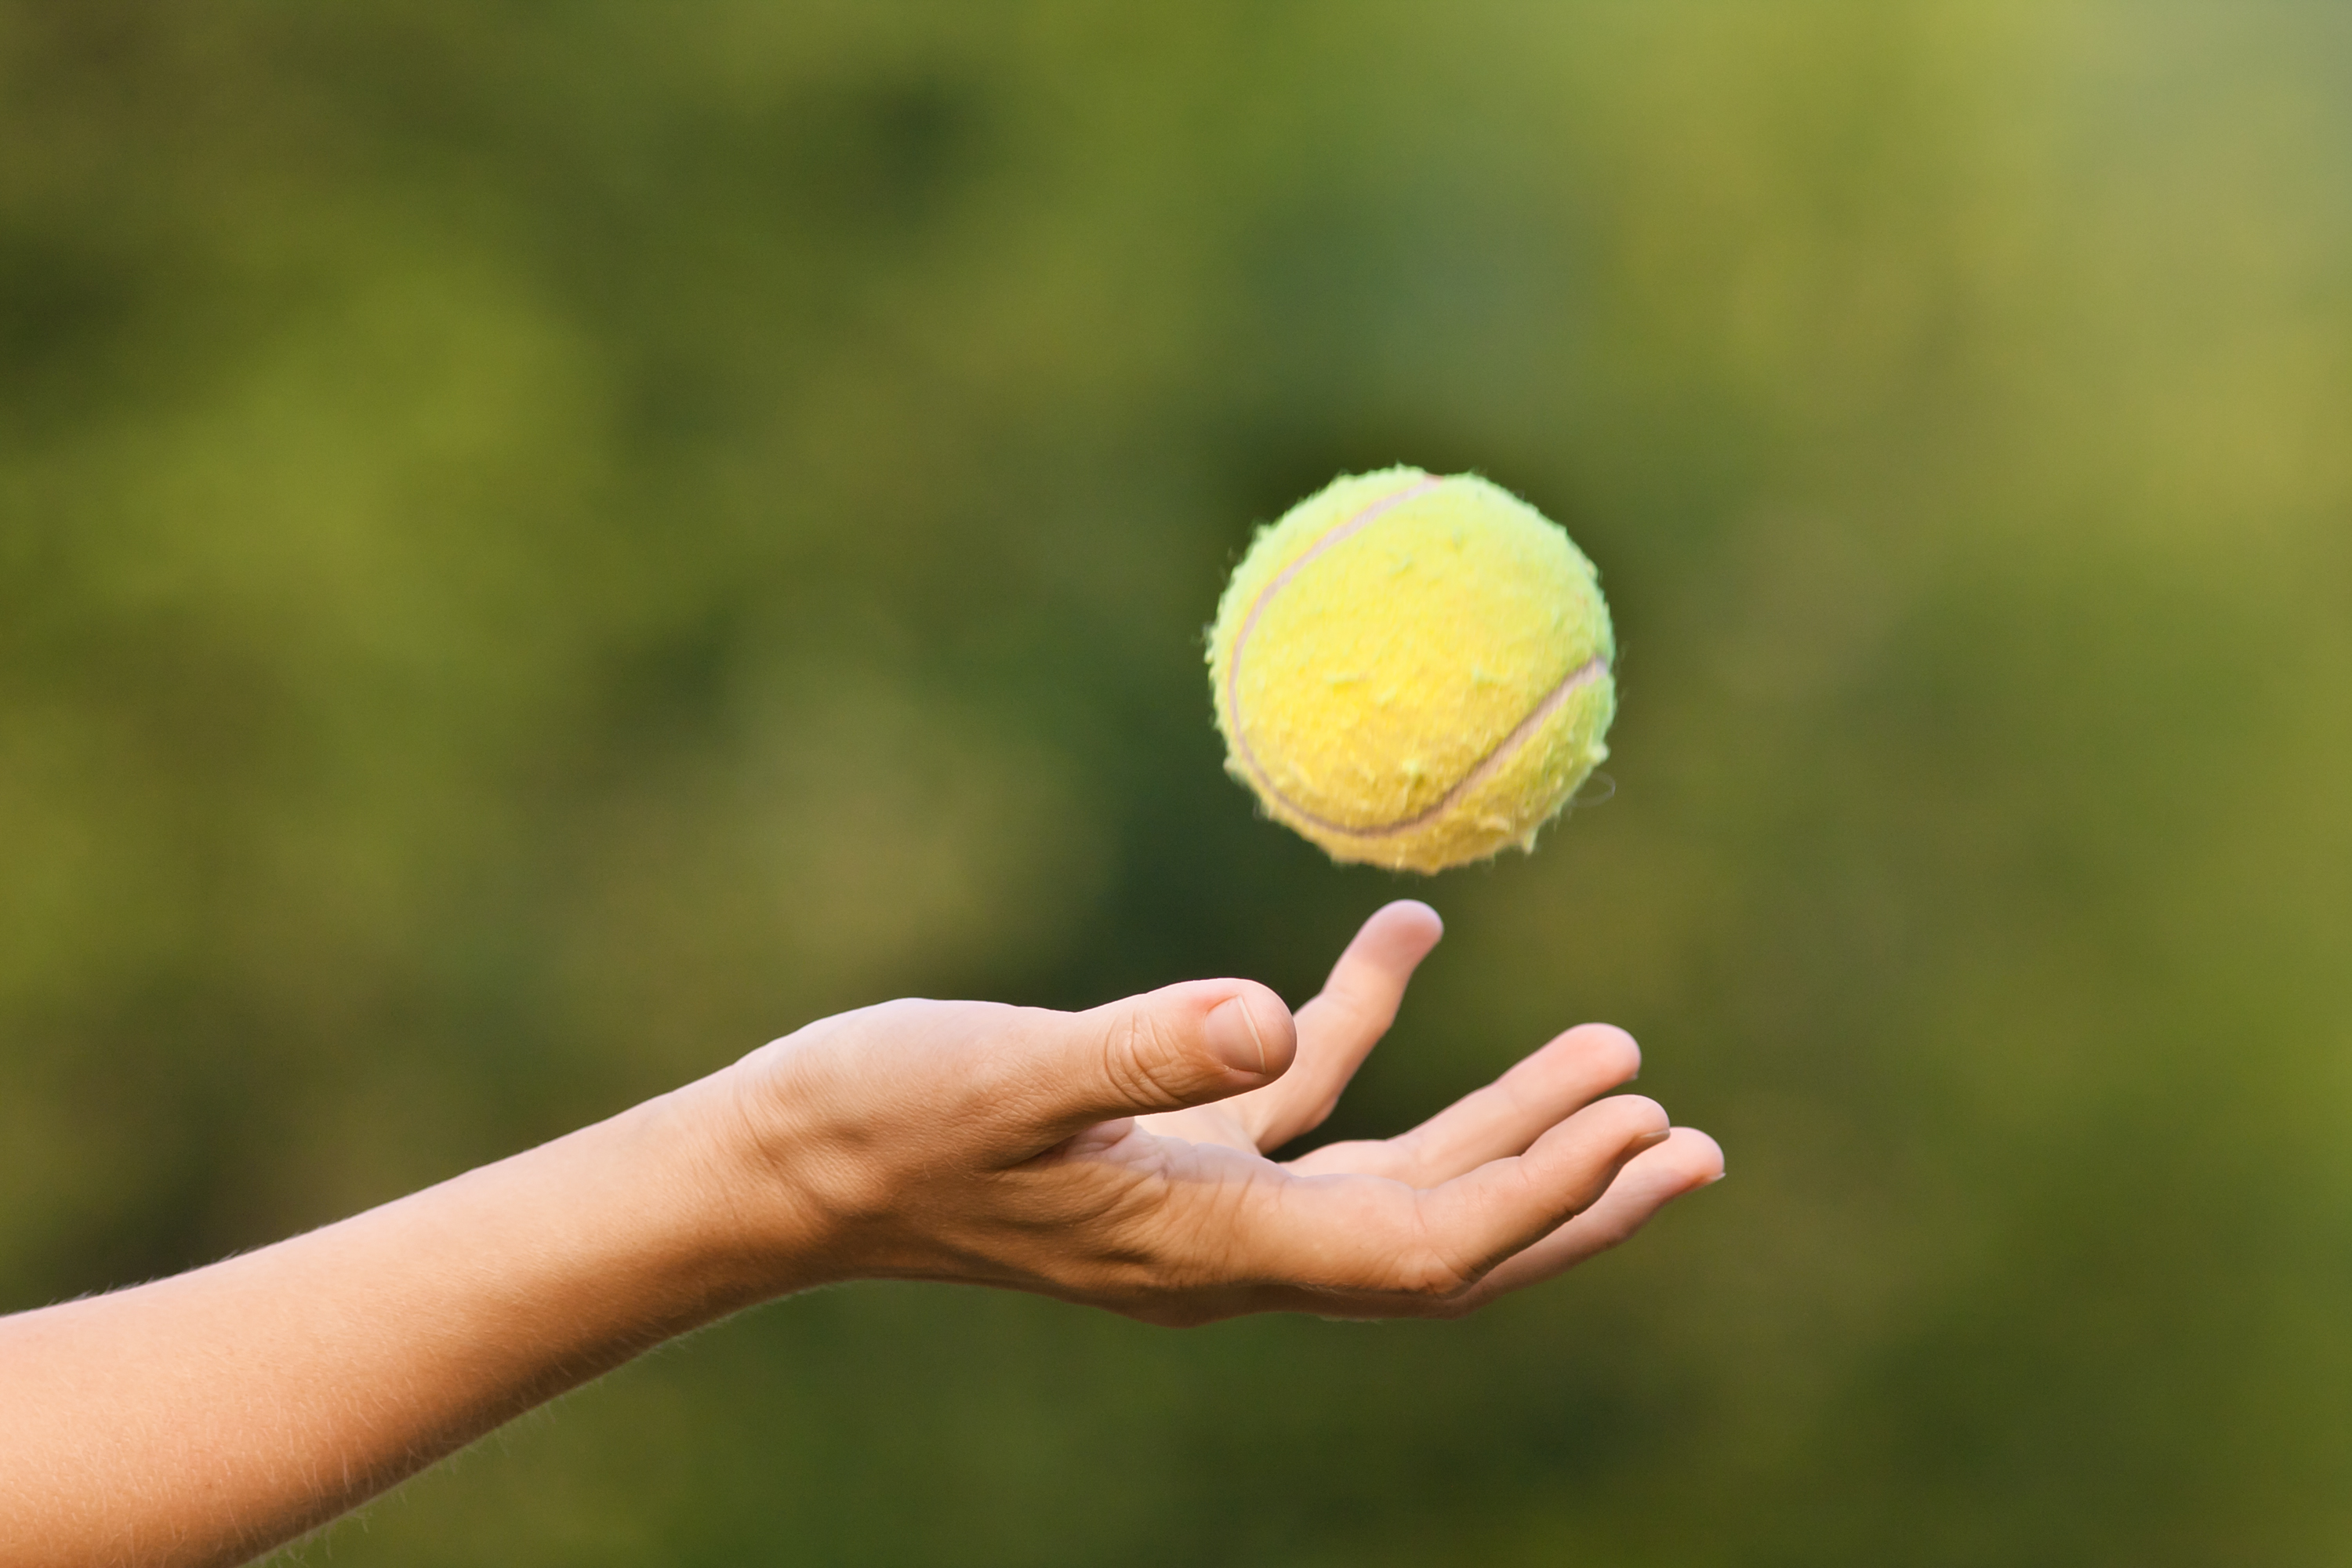 hand tossing tennis ball